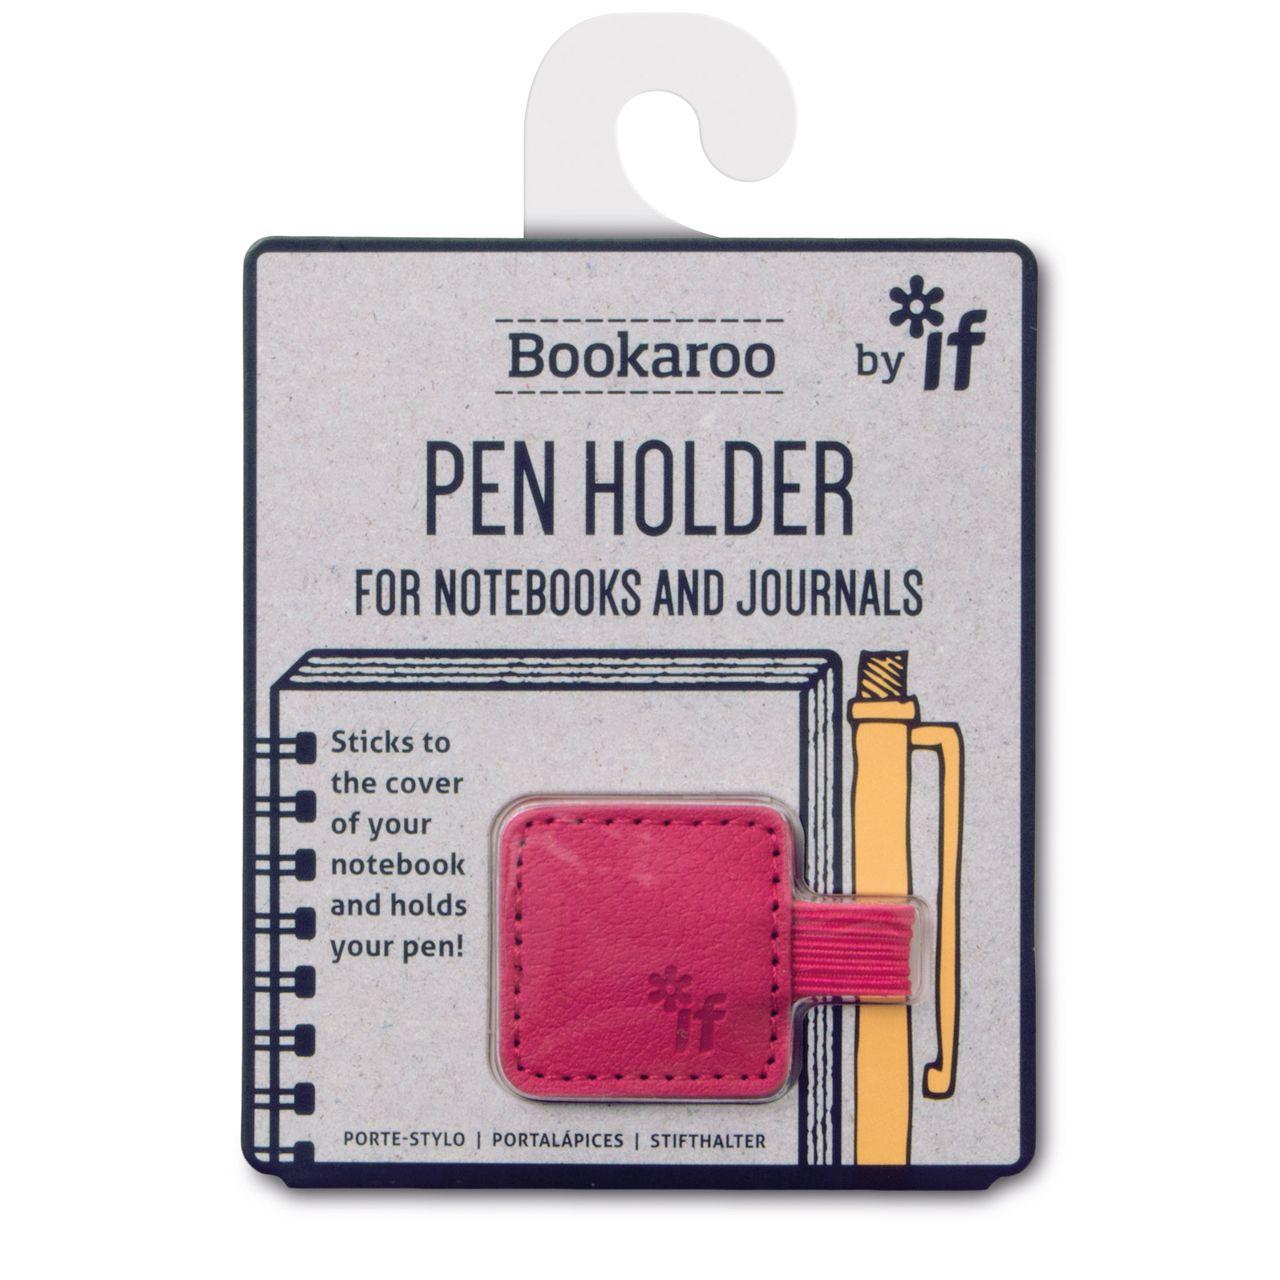 Pen Holder For Notebooks